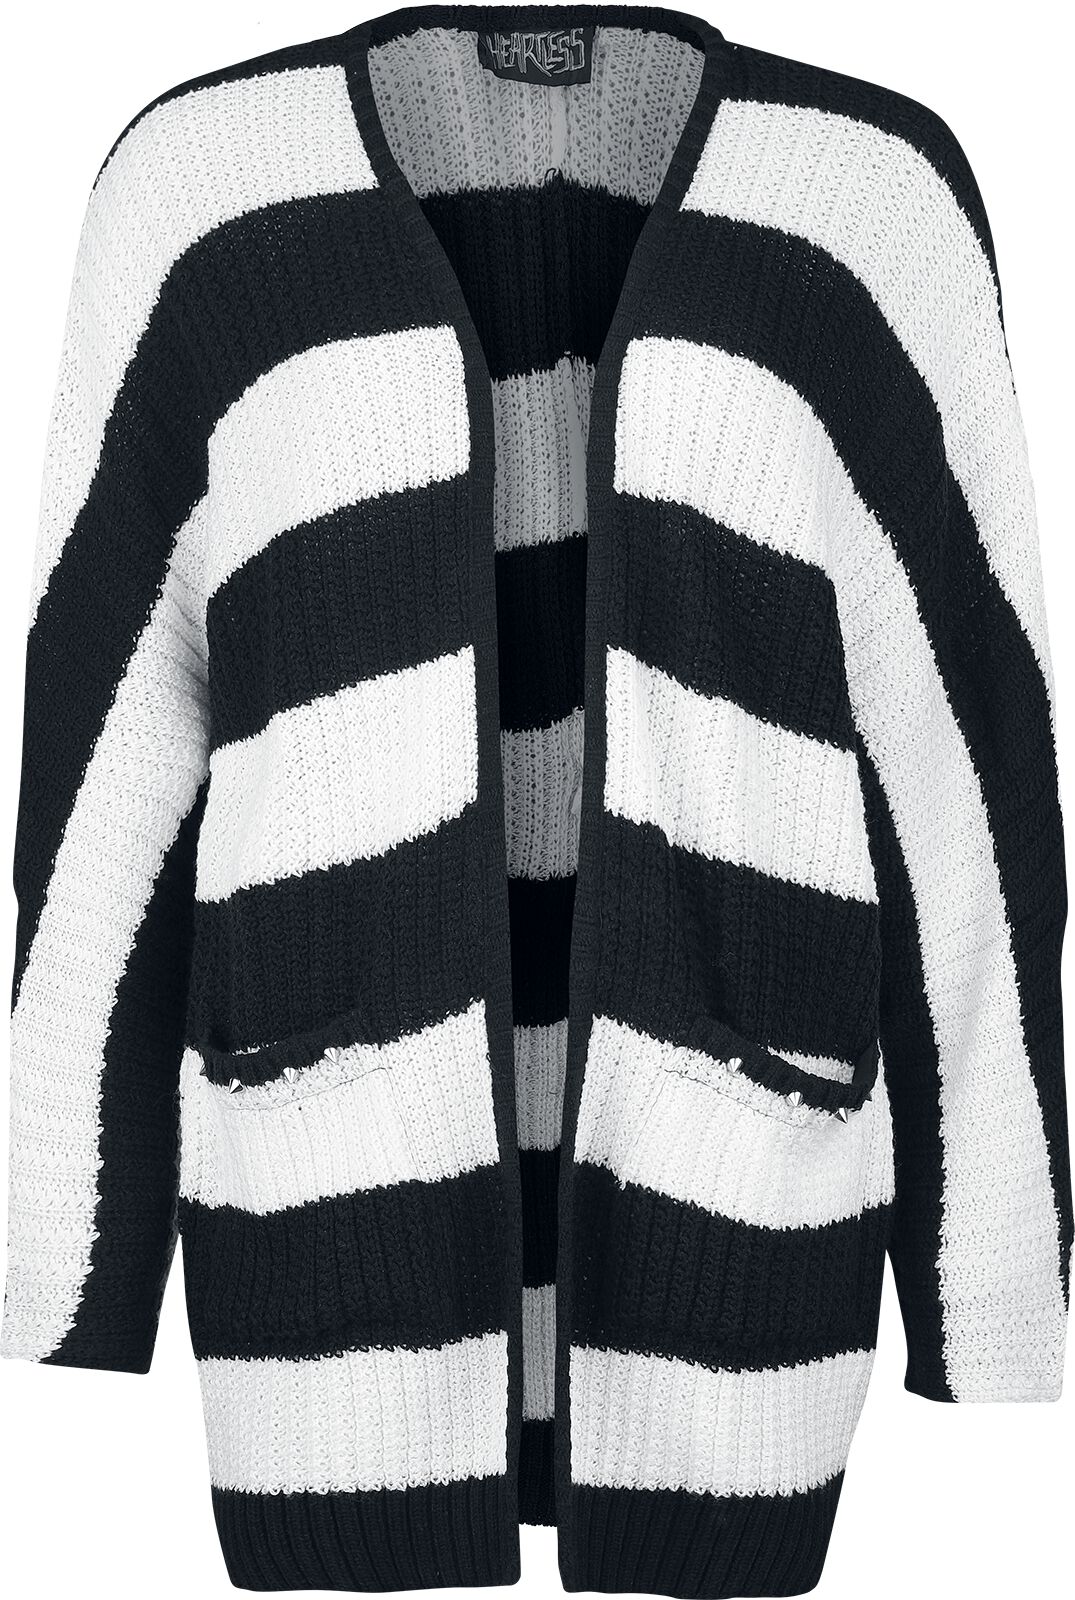 Heartless - Gothic Cardigan - In A Daze Cardigan - XL bis 4XL - für Damen - Größe XL - schwarz/weiß